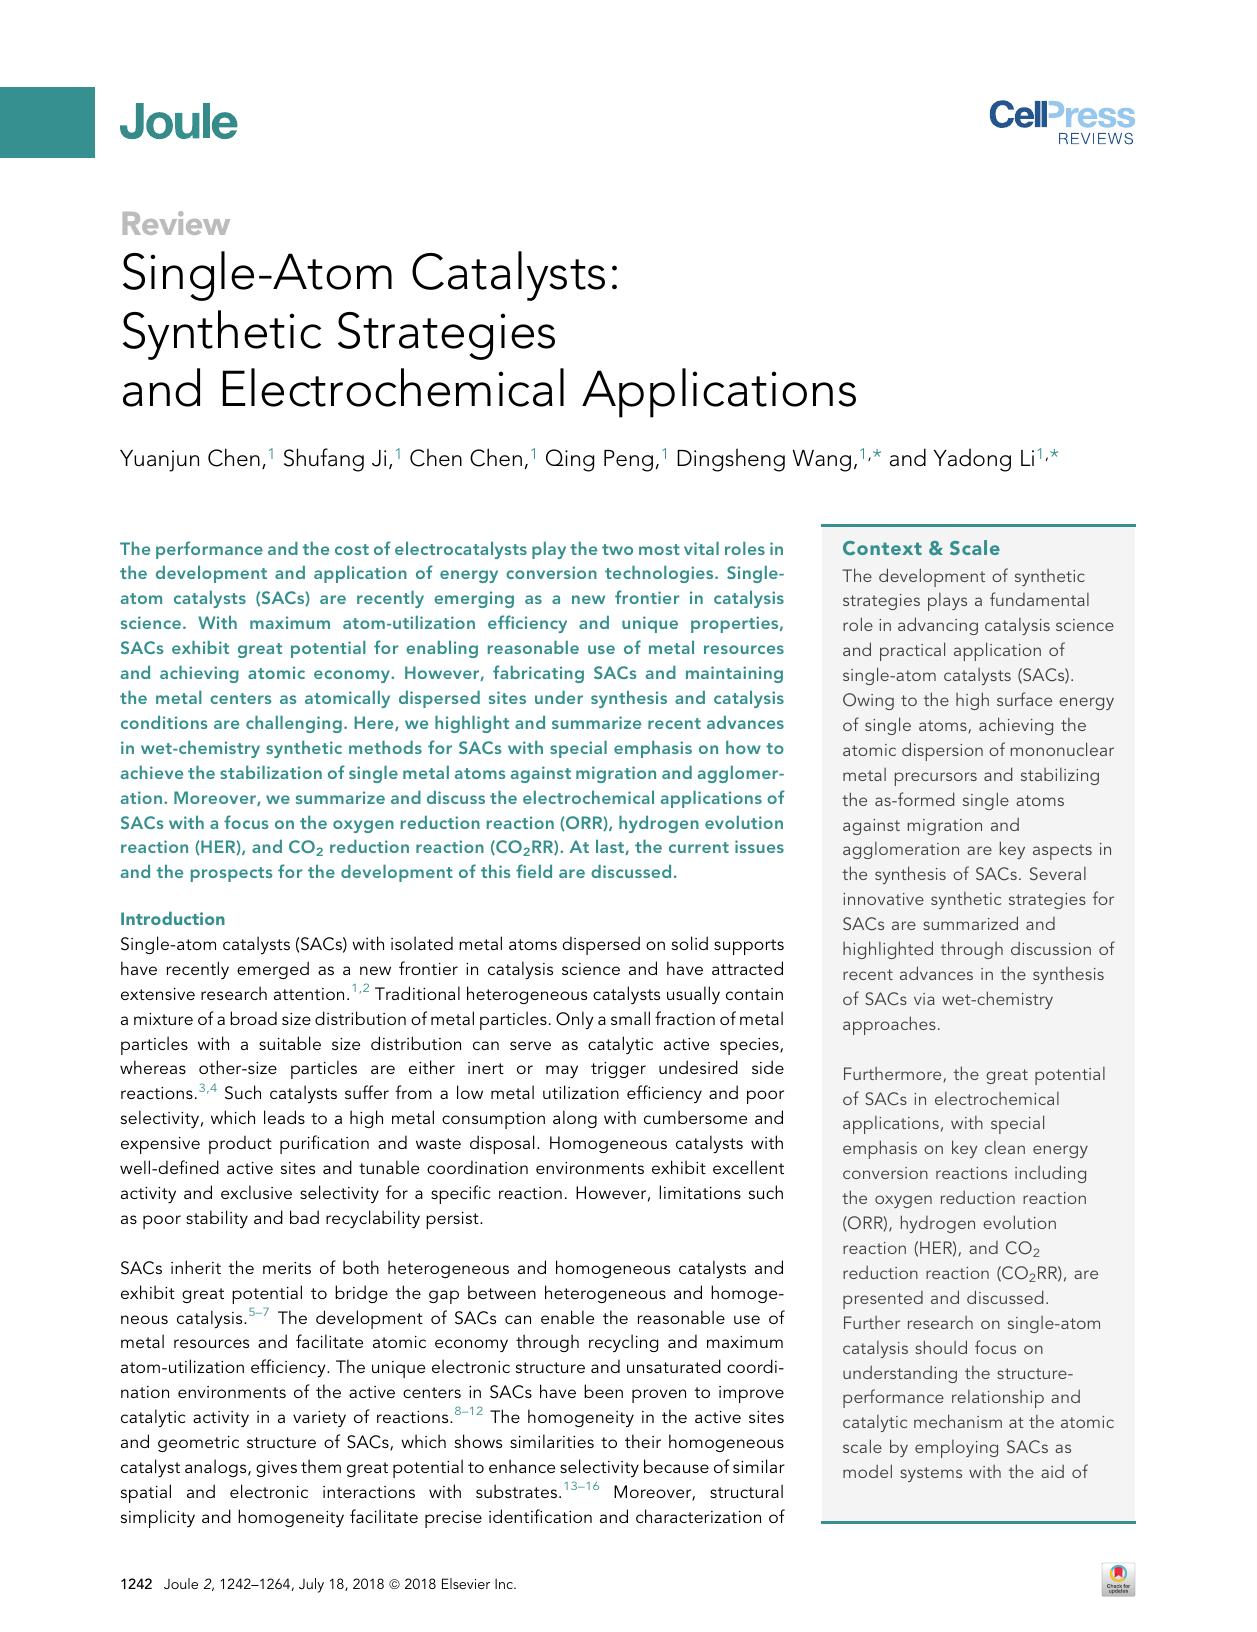 Single-Atom Catalysts: Synthetic Strategies and Electrochemical Applications by Yuanjun Chen & Shufang Ji & Chen Chen & Qing Peng & Dingsheng Wang & Yadong Li